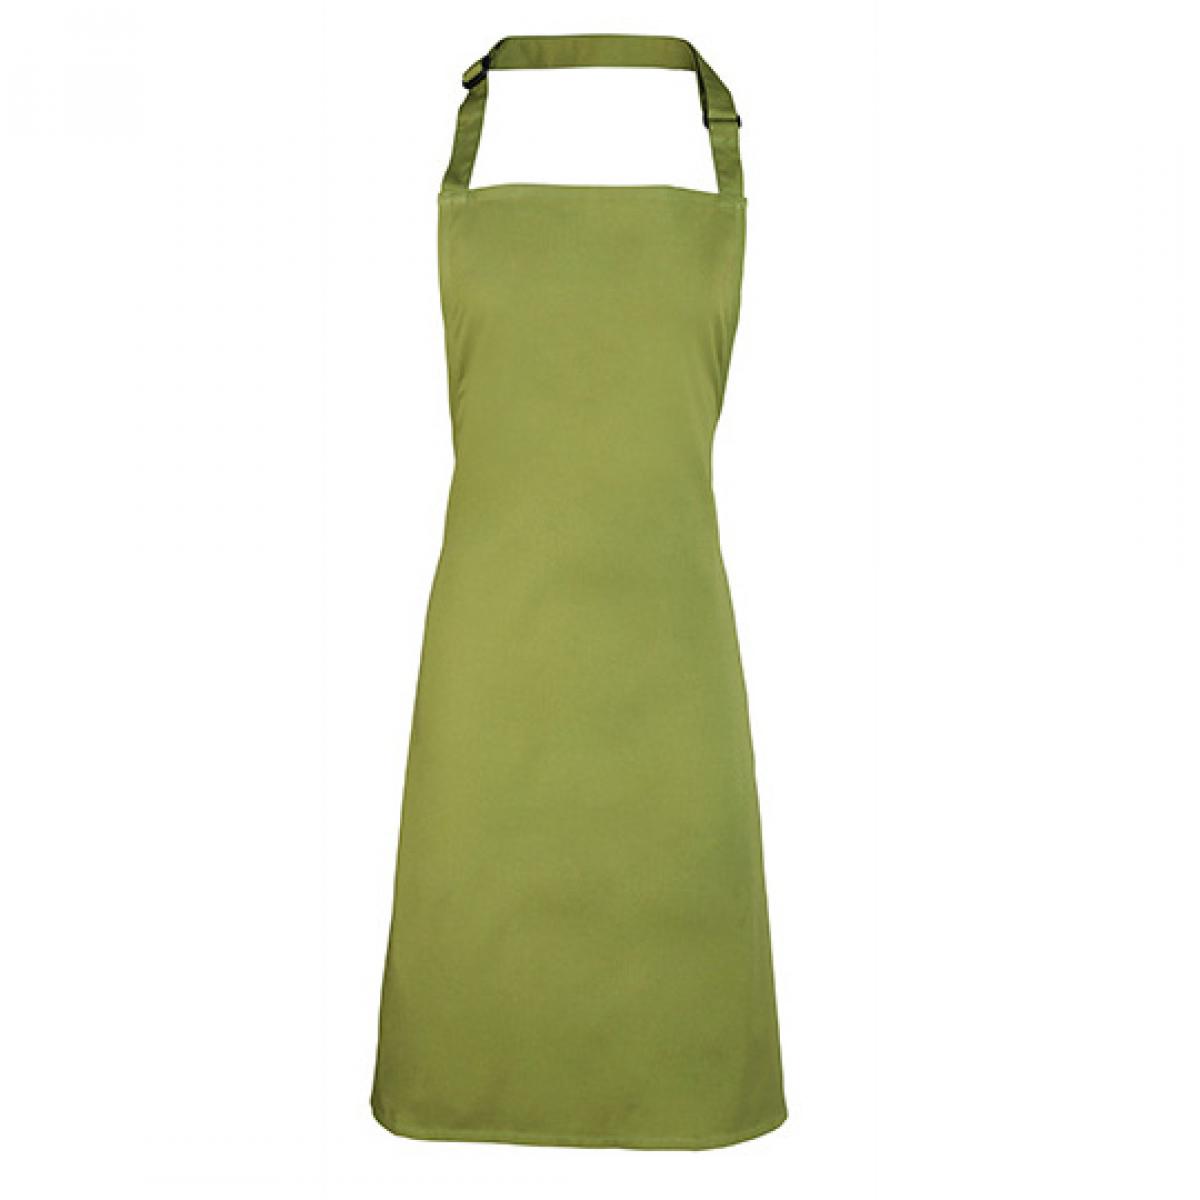 Hersteller: Premier Workwear Herstellernummer: PR150 Artikelbezeichnung: Latzschürze ´Colours´ - Waschbar bei 60 °C Farbe: Oasis Green (ca. Pantone 371 )